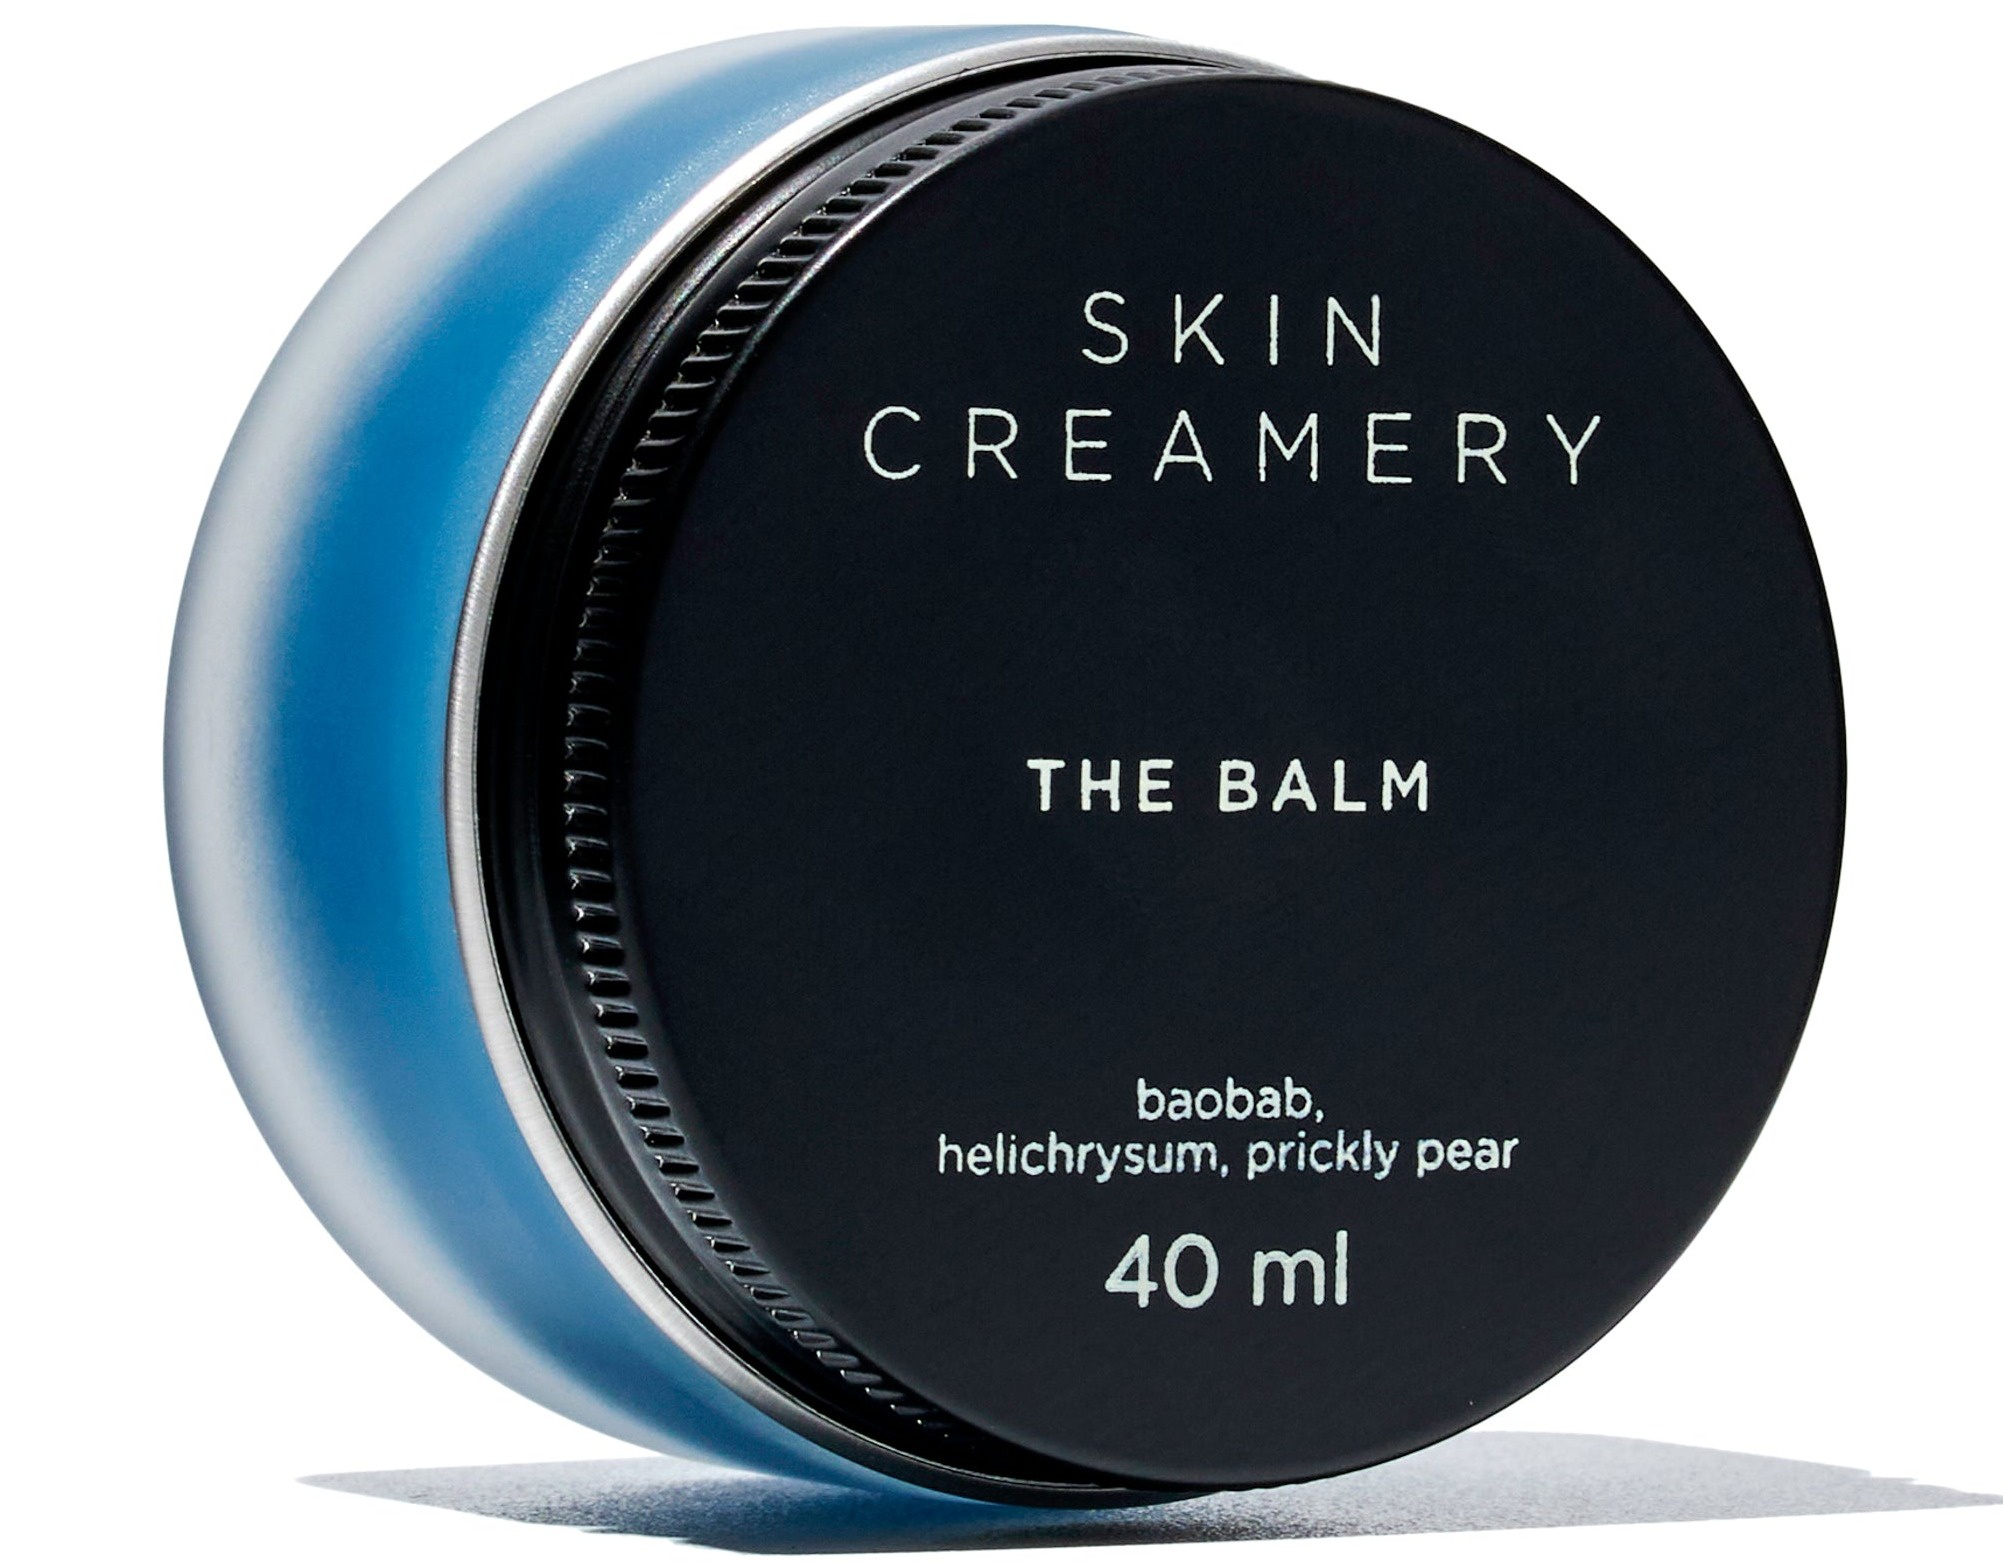 Skin Creamery The Balm